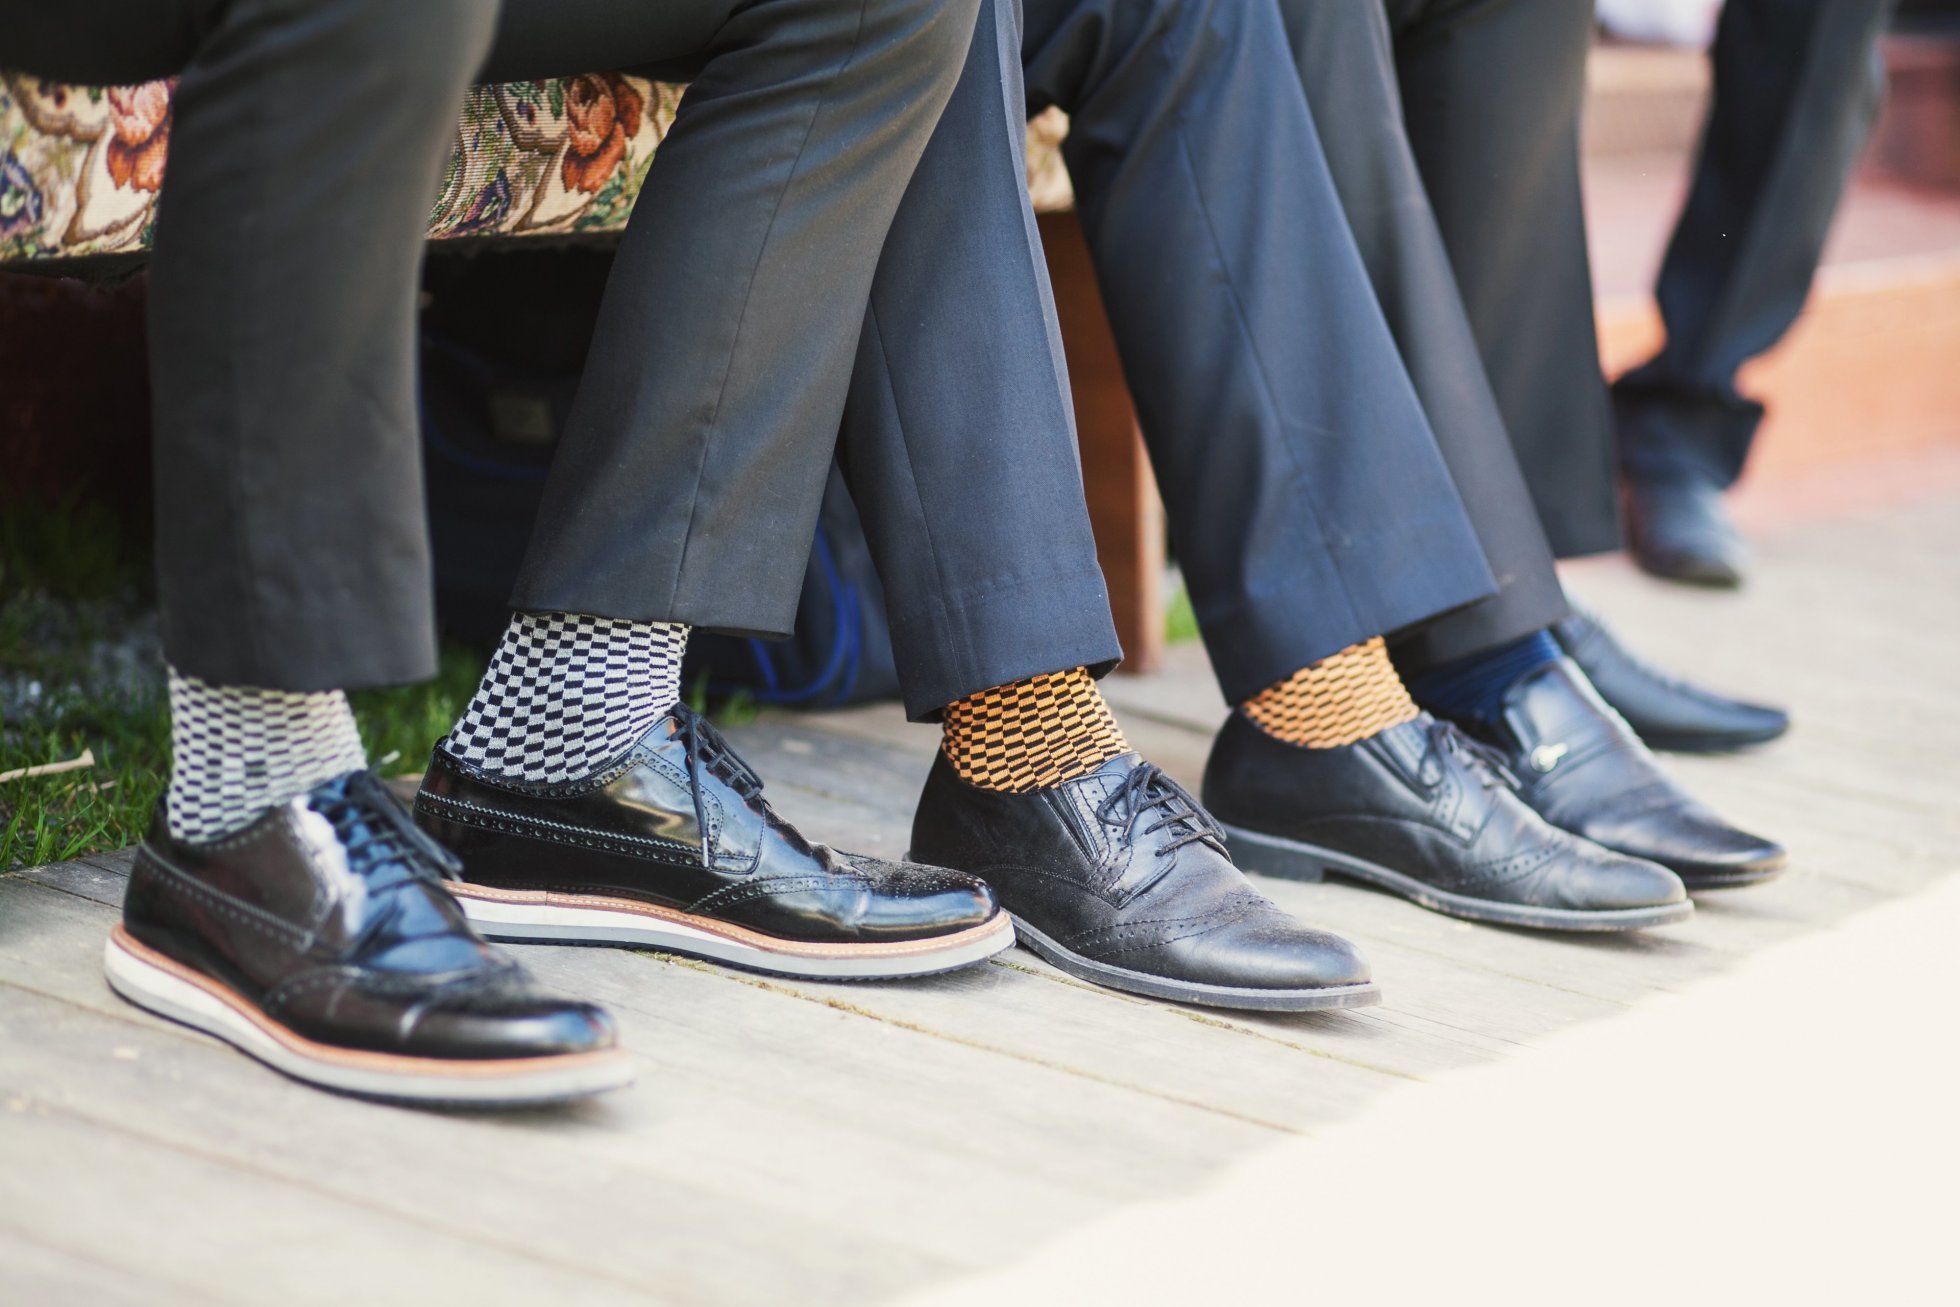 navn religion Overflødig Er sokker i sandaler virkelig så kikset? | Aniston